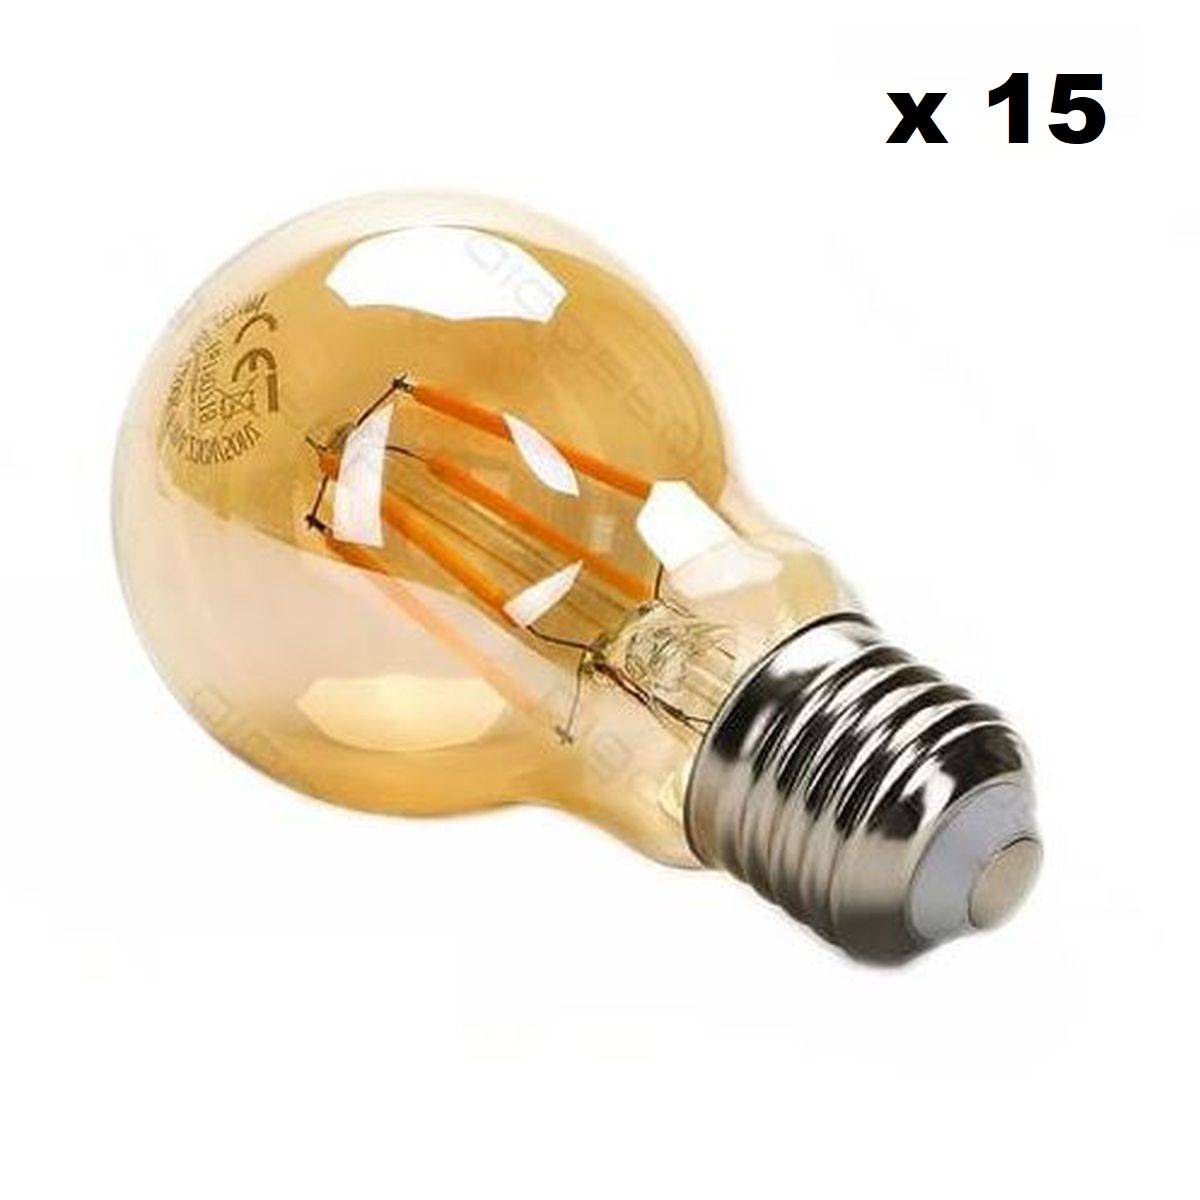 Kit guirlande guinguette, de 1 watt, avec ampoules à filament, de